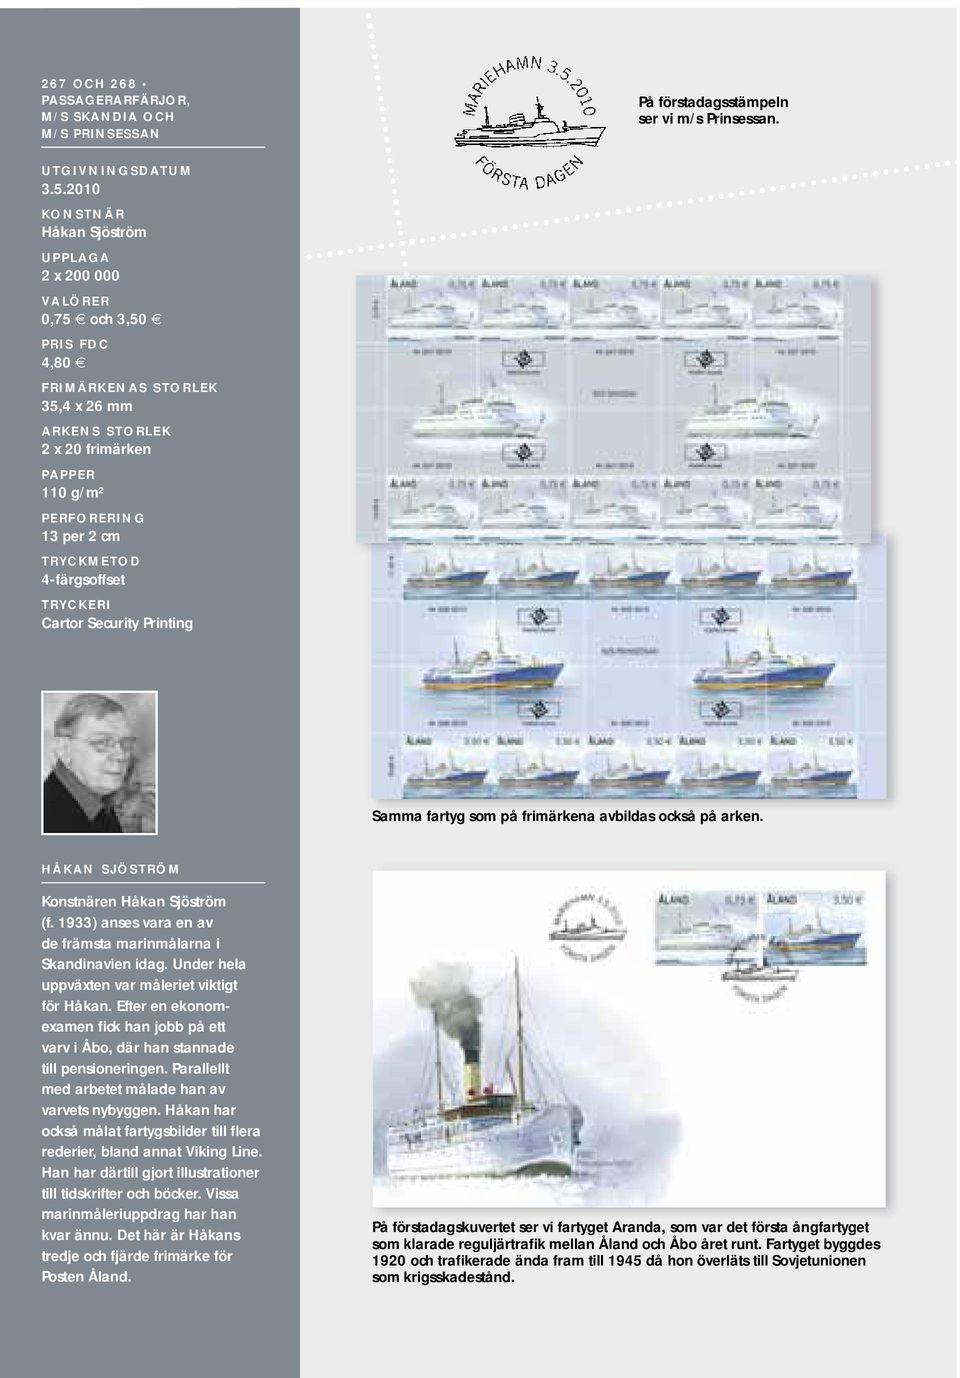 TRYCKMETOD 4-färgsoffset TRYCKERI Cartor Security Printing Samma fartyg som på frimärkena avbildas också på arken. HÅKAN SJÖSTRÖM Konstnären Håkan Sjöström (f.